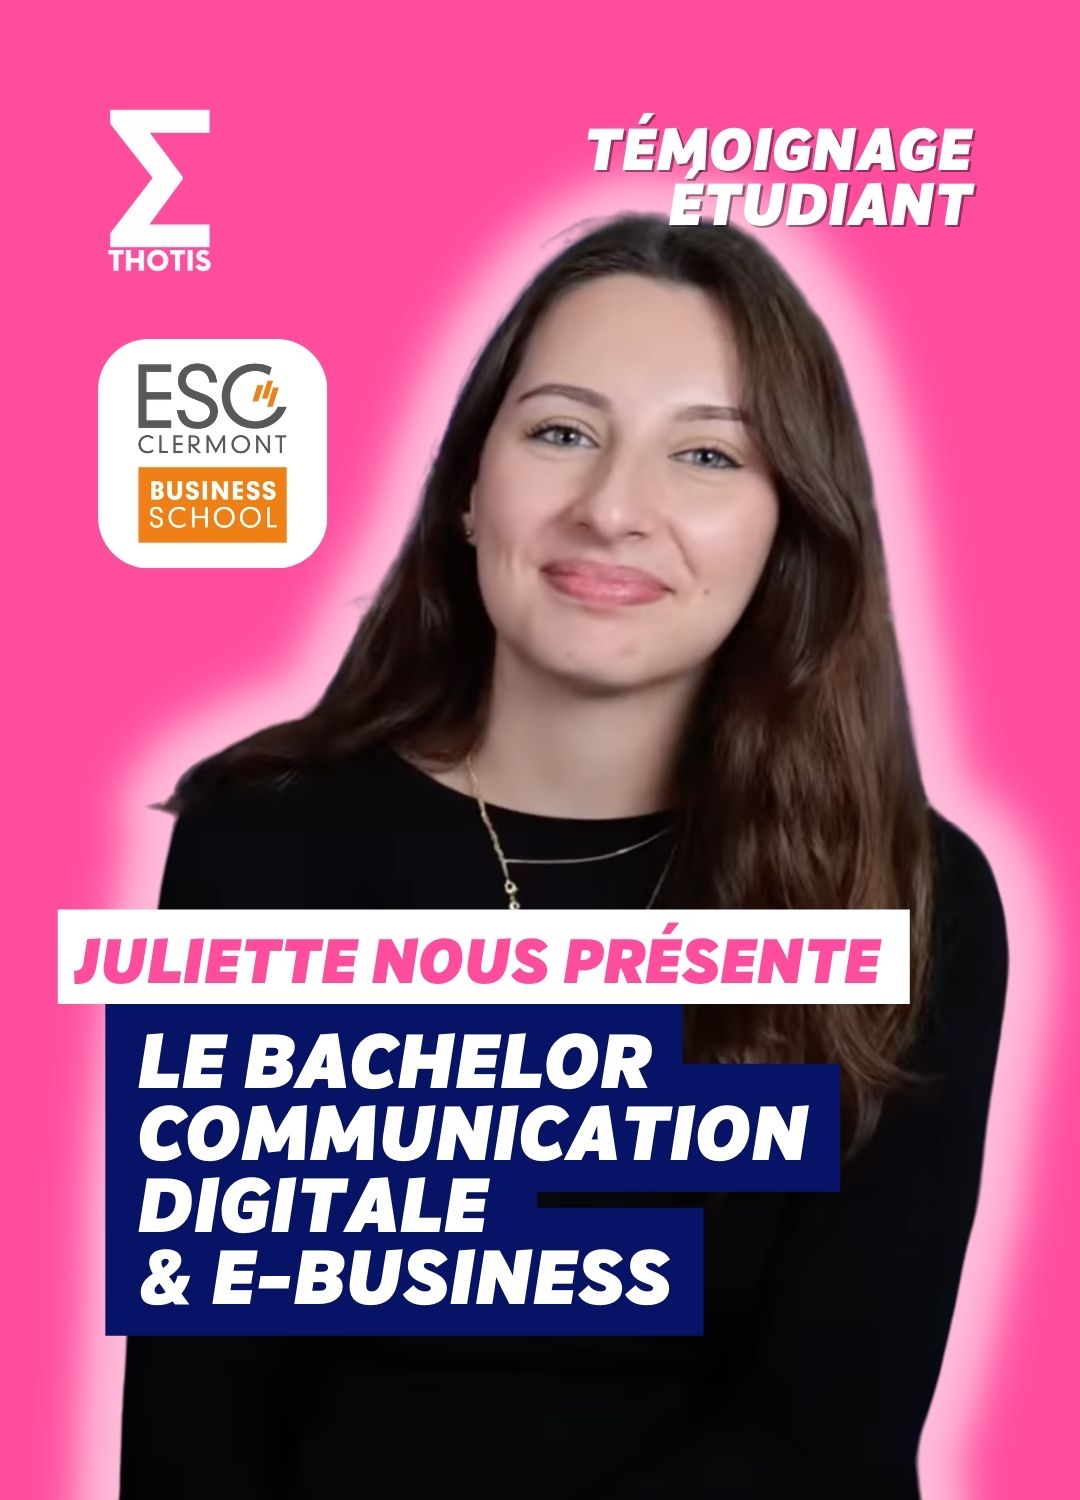 Bachelor communication digitale e-business esc Clermont